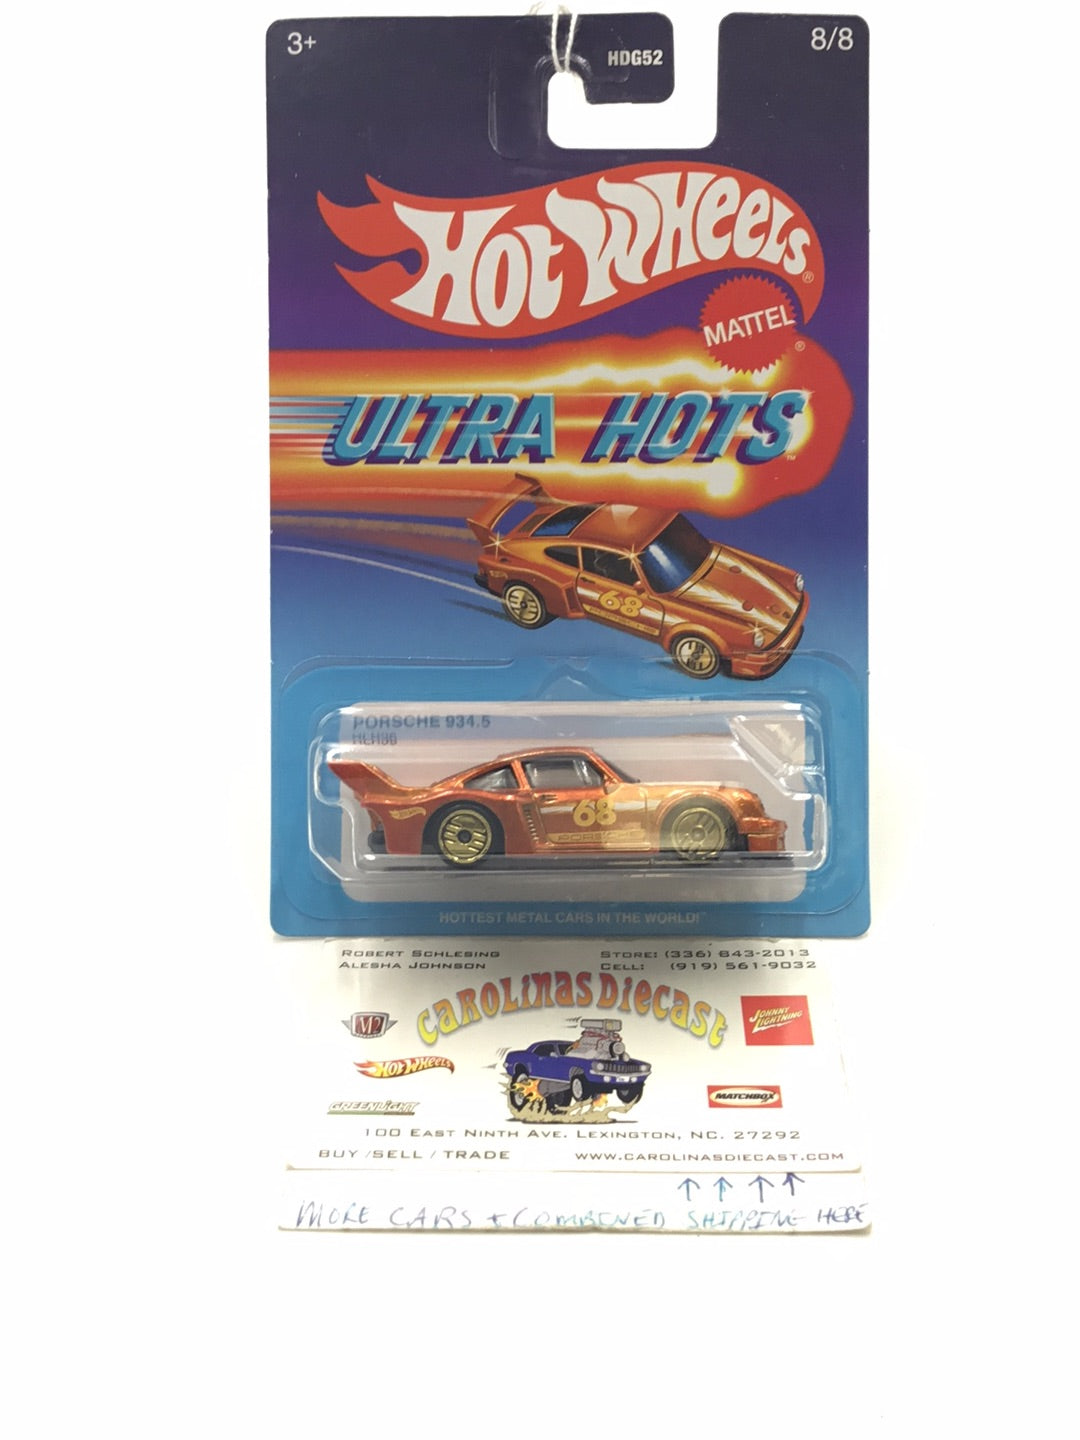 Hot wheels Ultra Hots Porsche 934.5 8/8 KK4